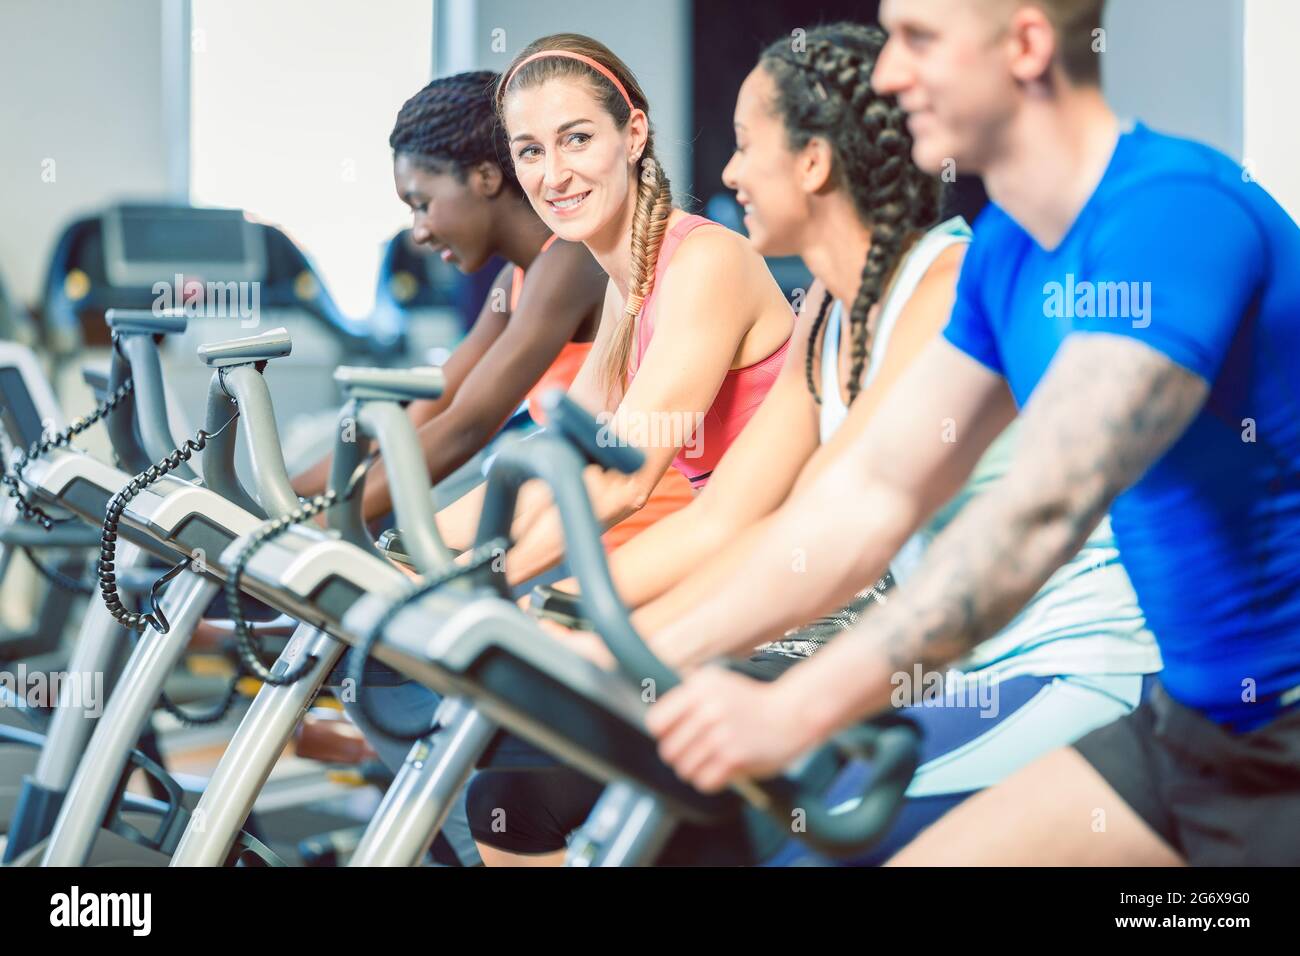 bruna bella donna sorridente mentre si pedalava su una moderna bicicletta fitness durante la lezione di spinning di gruppo in palestra Foto Stock